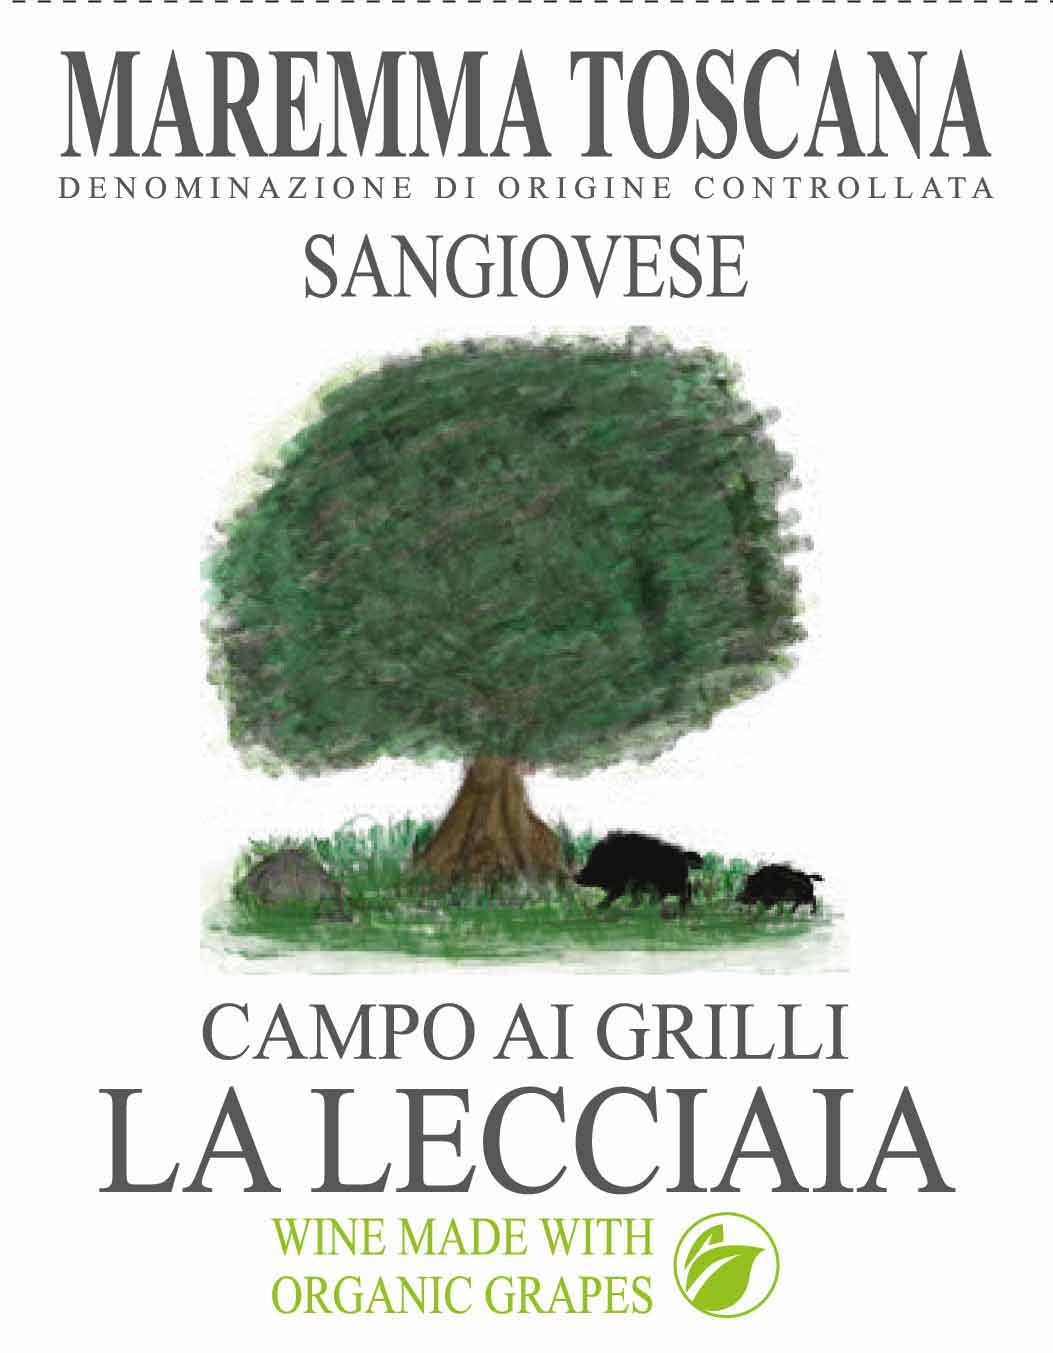 La Lecciaia - Campo Ai Grilli Sangiovese label